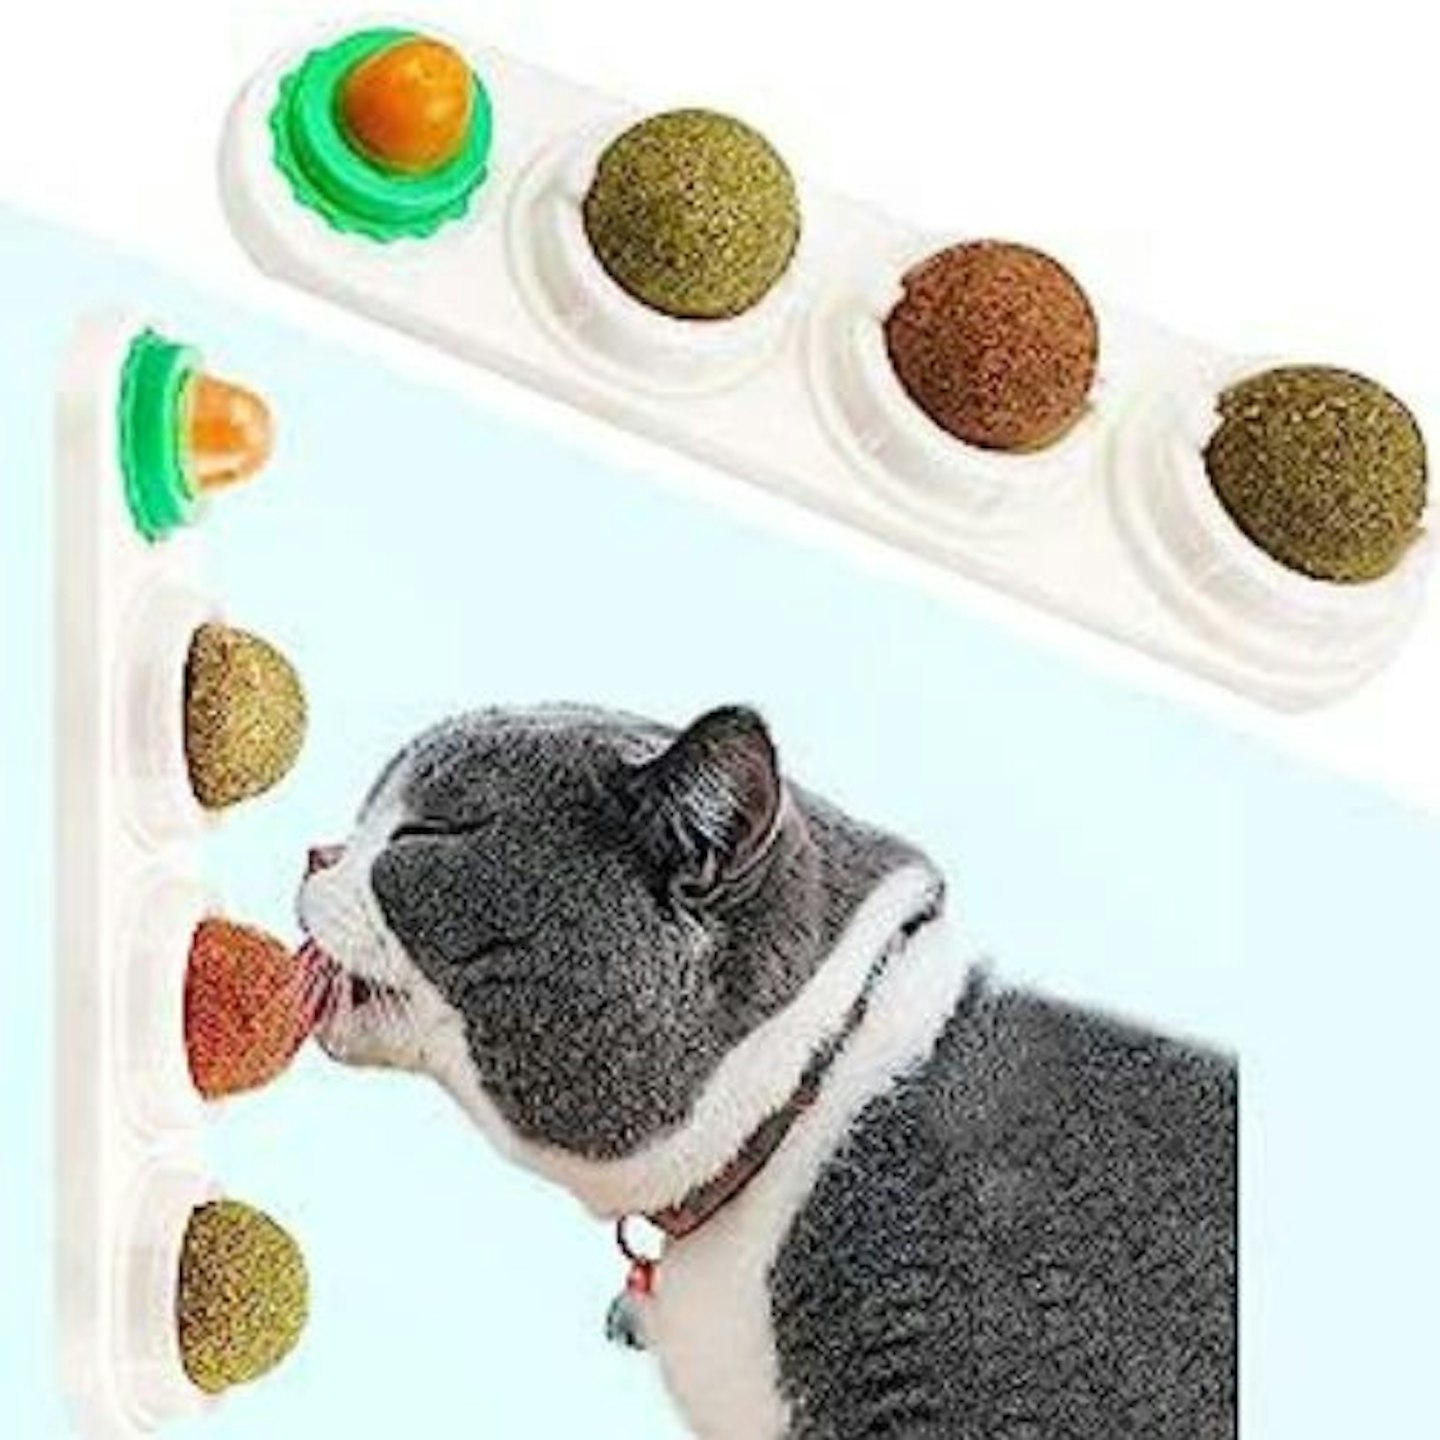 Catnip toys to peak your cat's curiosity